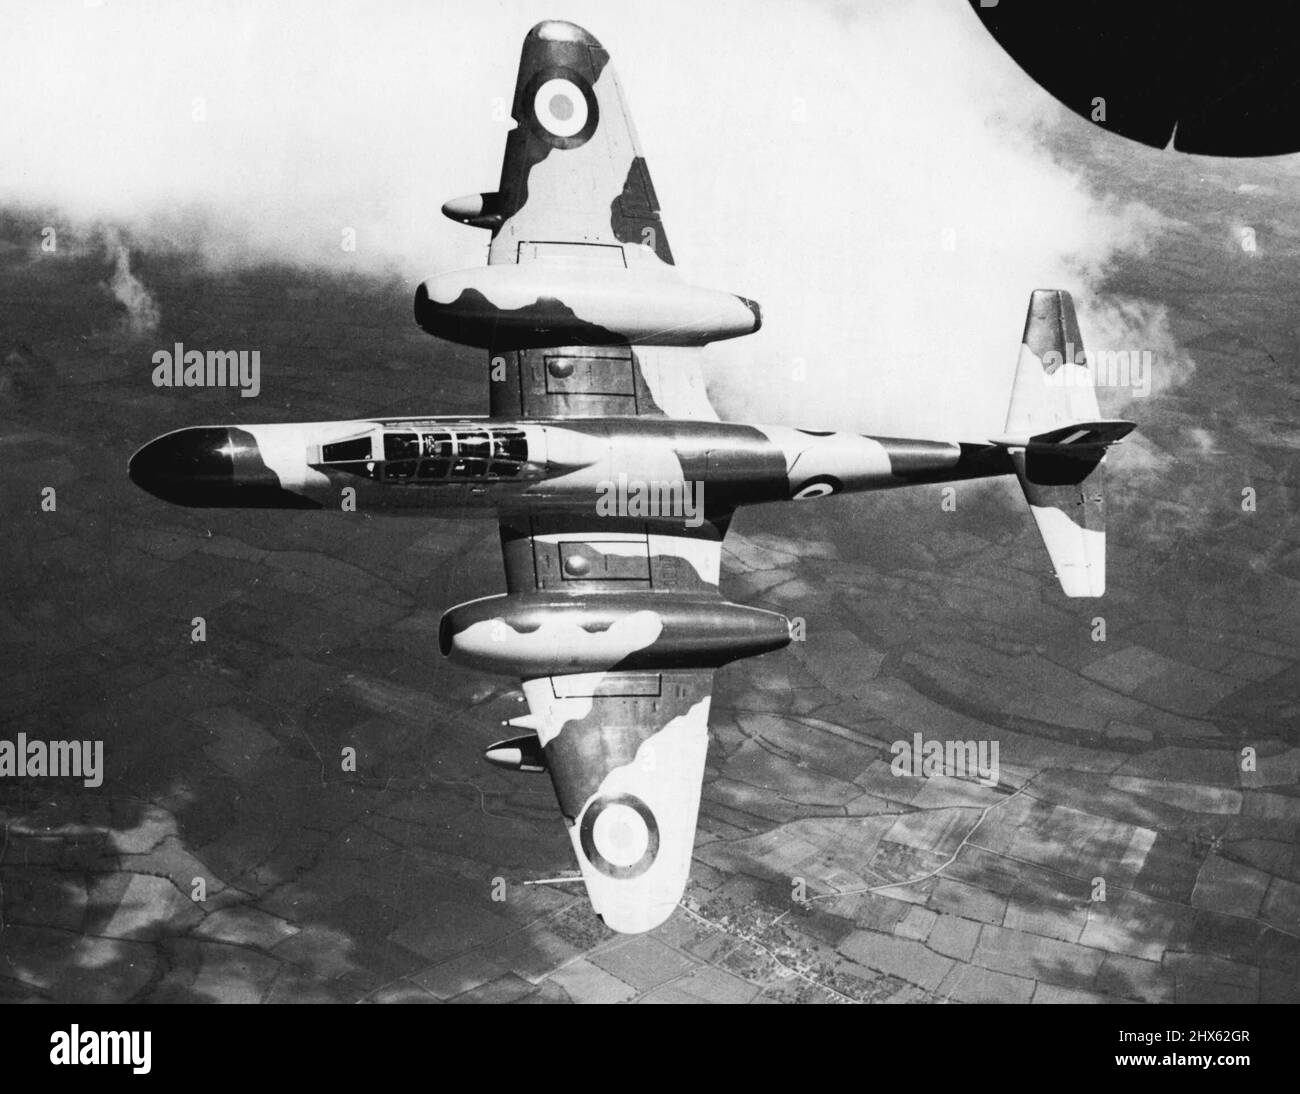 Plan at Elevation vu d'en haut comme il vole haut au milieu des nuages est un Armstrong Whitworth N. F. 11 de nuit. Combattant de nuit standard de la Royal Air Force, le N.F.11 est alimenté par deux turbines à gaz Rolls-Royce 'derwon' et possède quatre canons de 20mm. Montés par paires dans les ailes extérieures des sacelles du moteur. Son équipement radar est porté dans le nez étendu. L'avion a une envergure de 43 pieds, une longueur de 48ft. Gin. Et une hauteur hors tout de 13ft. 11in. 18 juillet 1954. (Photo de Reu Banque D'Images